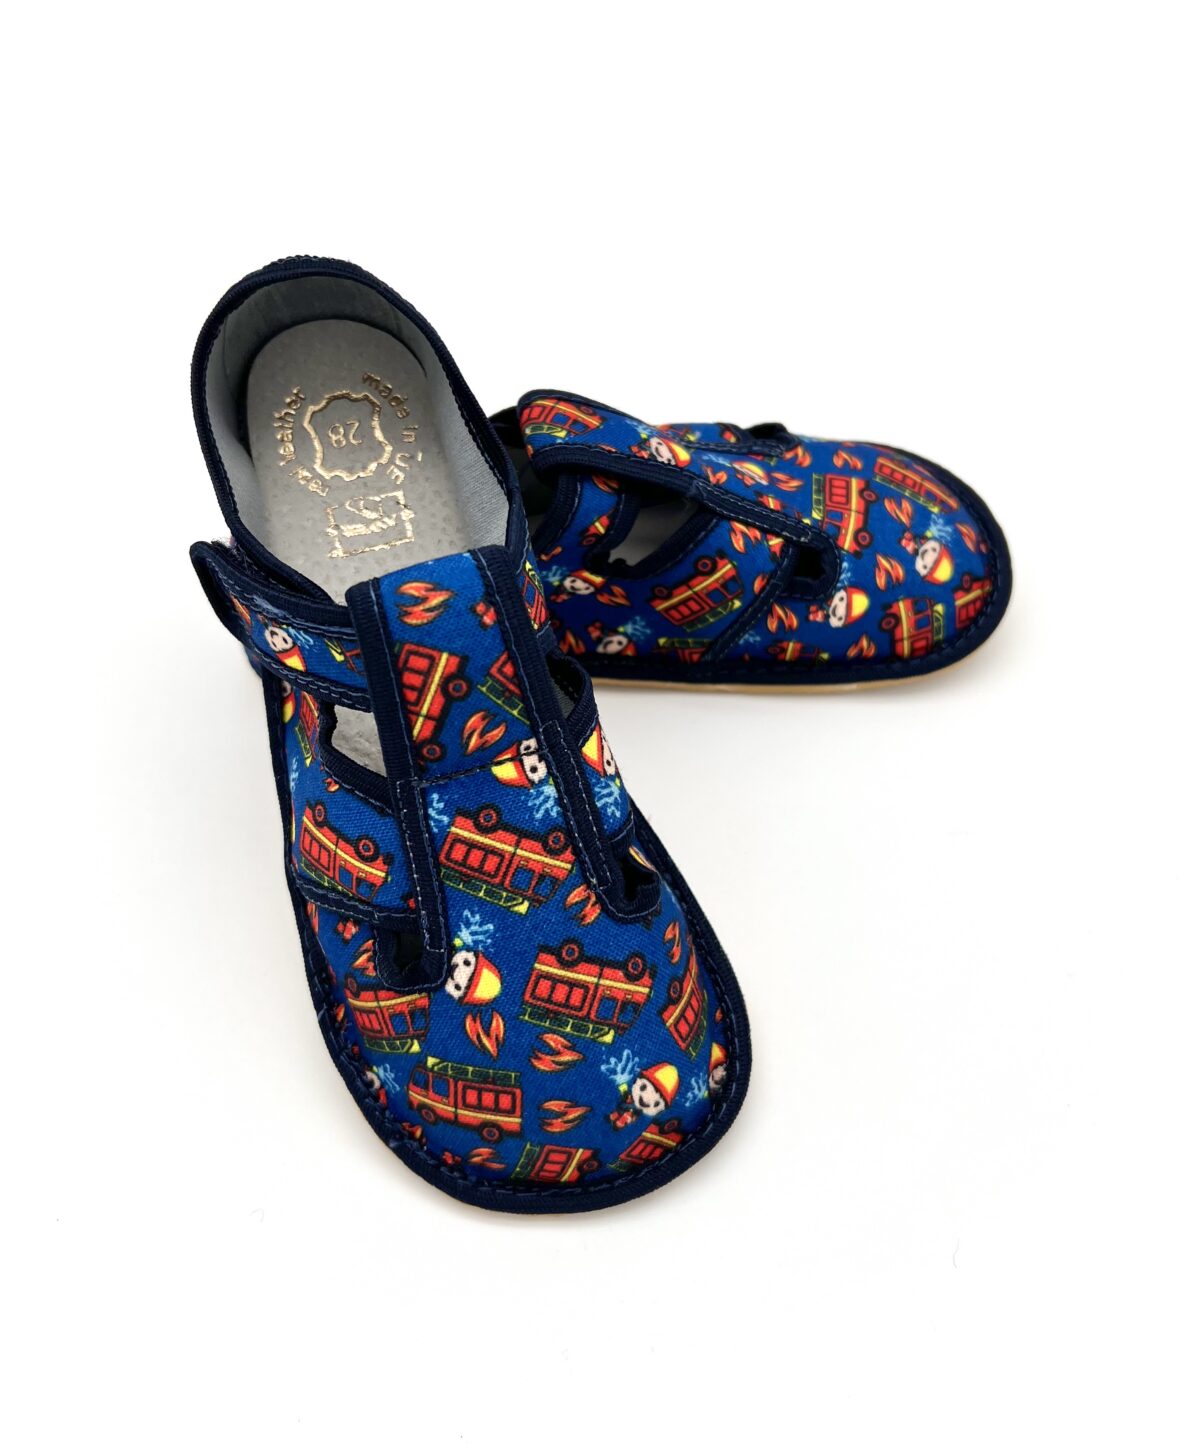 Raweks sisejalatsid Zuzia, Tuletõrje Laste barefoot jalatsid - HellyK - Kvaliteetsed lasteriided, villariided, barefoot jalatsid